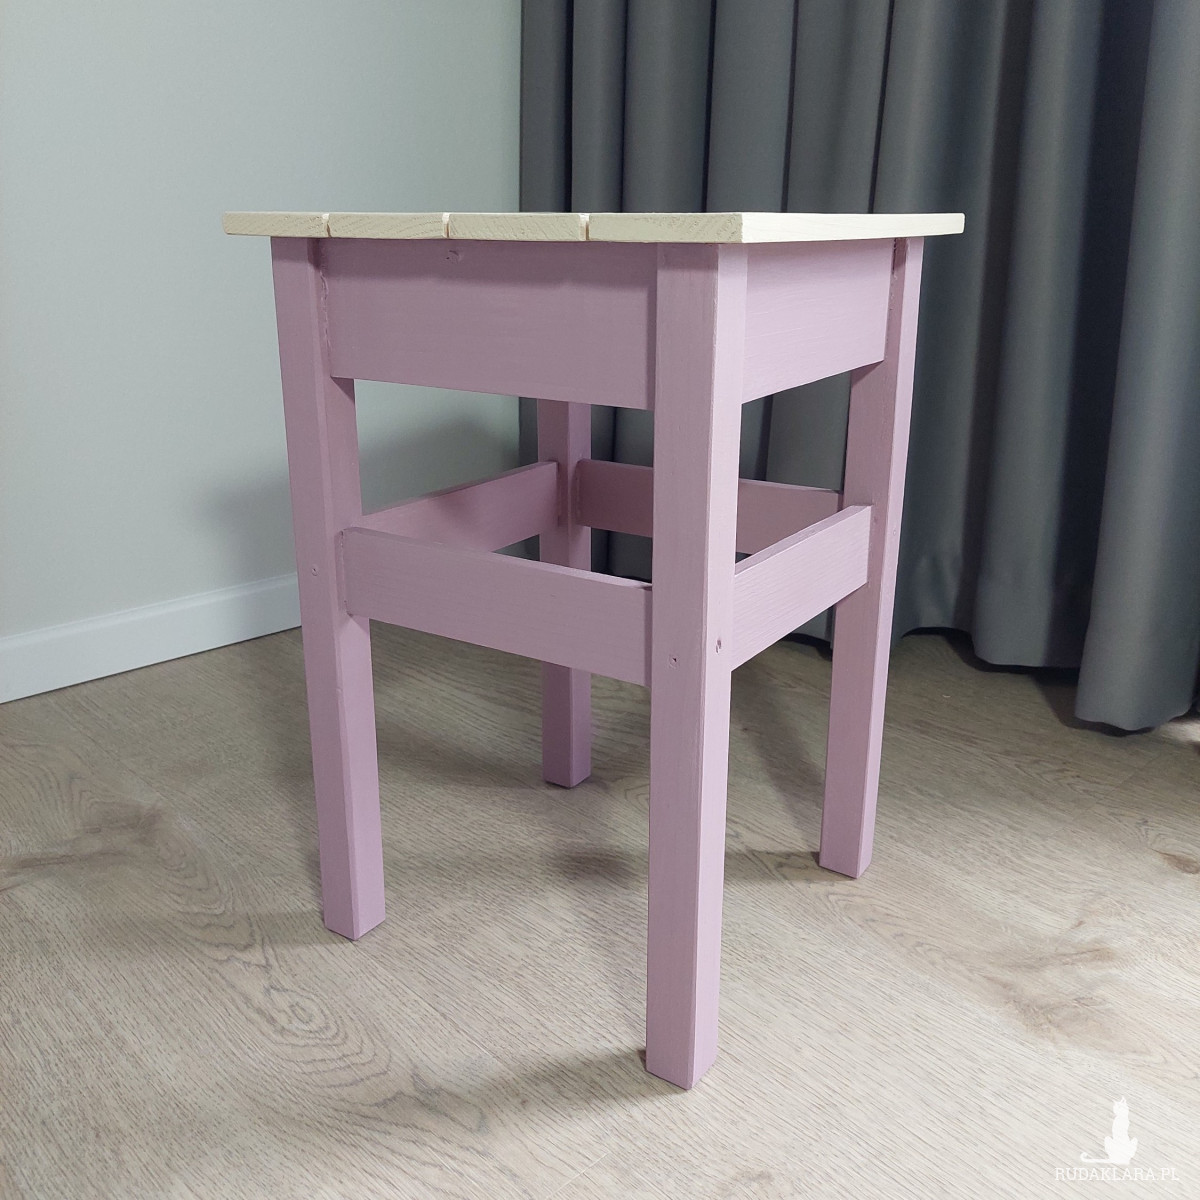 Własnoręcznie malowany handmade taboret / stołek w pastelowych kolorach